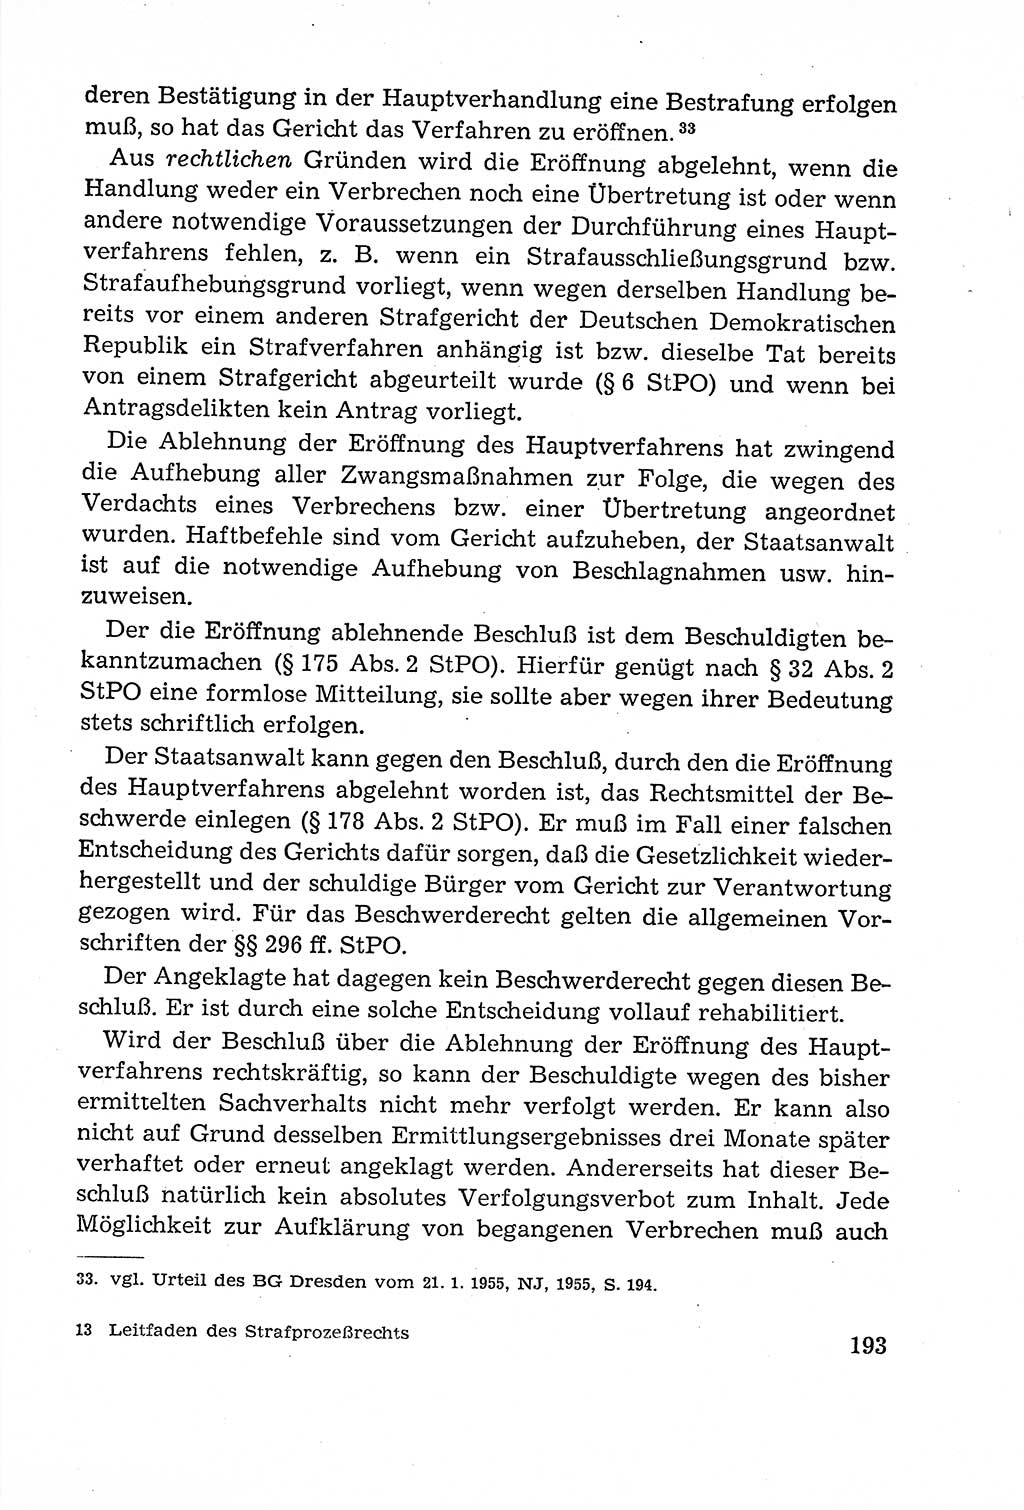 Leitfaden des Strafprozeßrechts der Deutschen Demokratischen Republik (DDR) 1959, Seite 193 (LF StPR DDR 1959, S. 193)